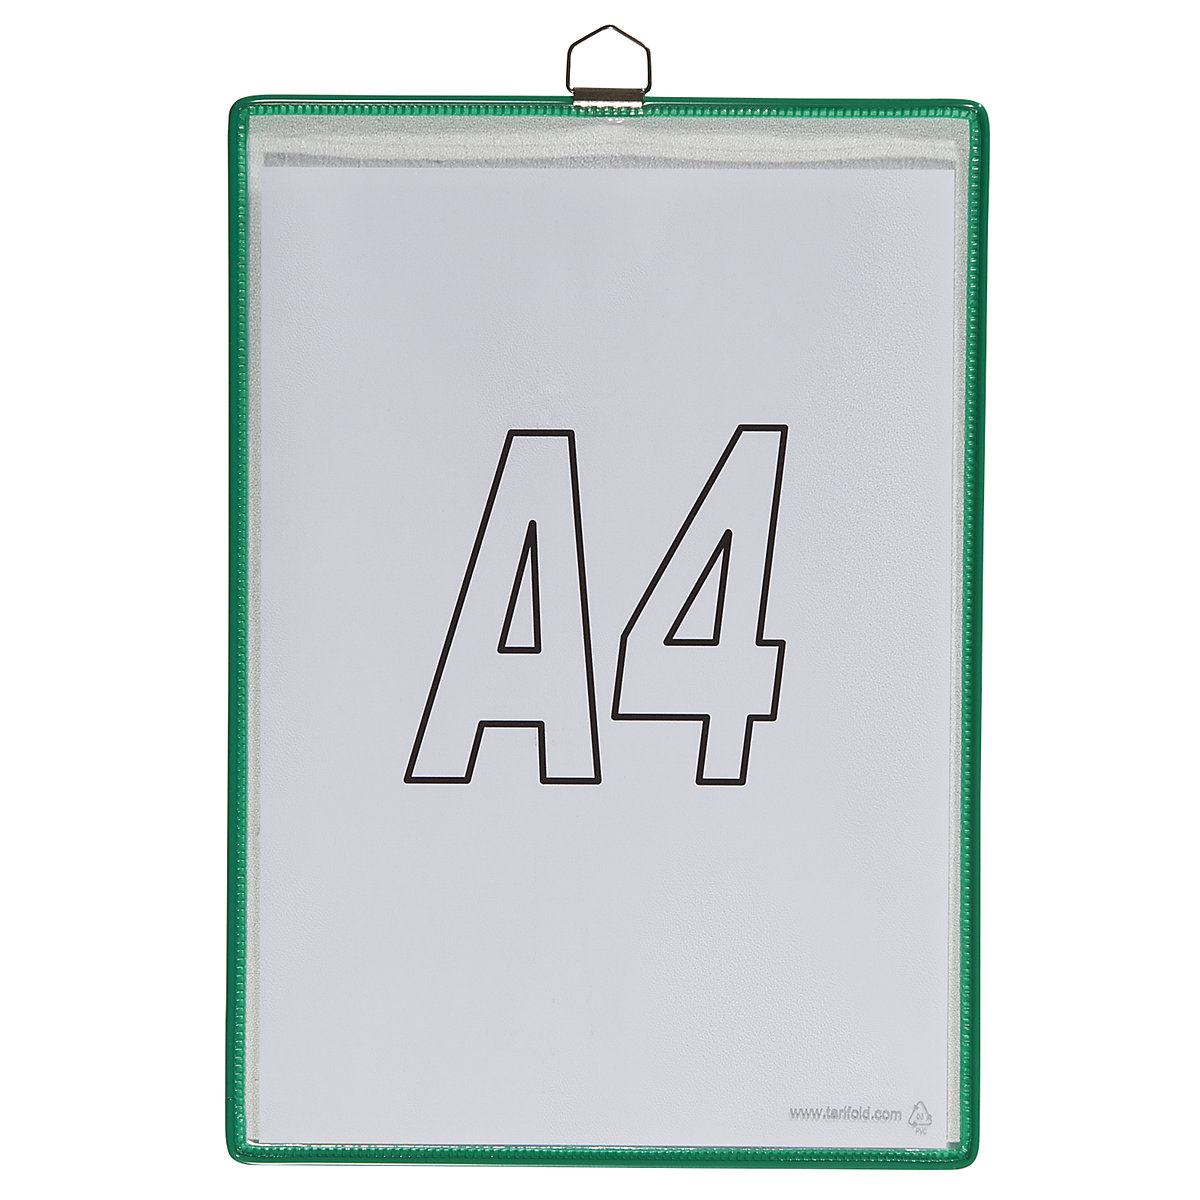 Závěsná průhledná kapsa – Tarifold, pro formát DIN A4, zelená, bal.j. 10 ks-6